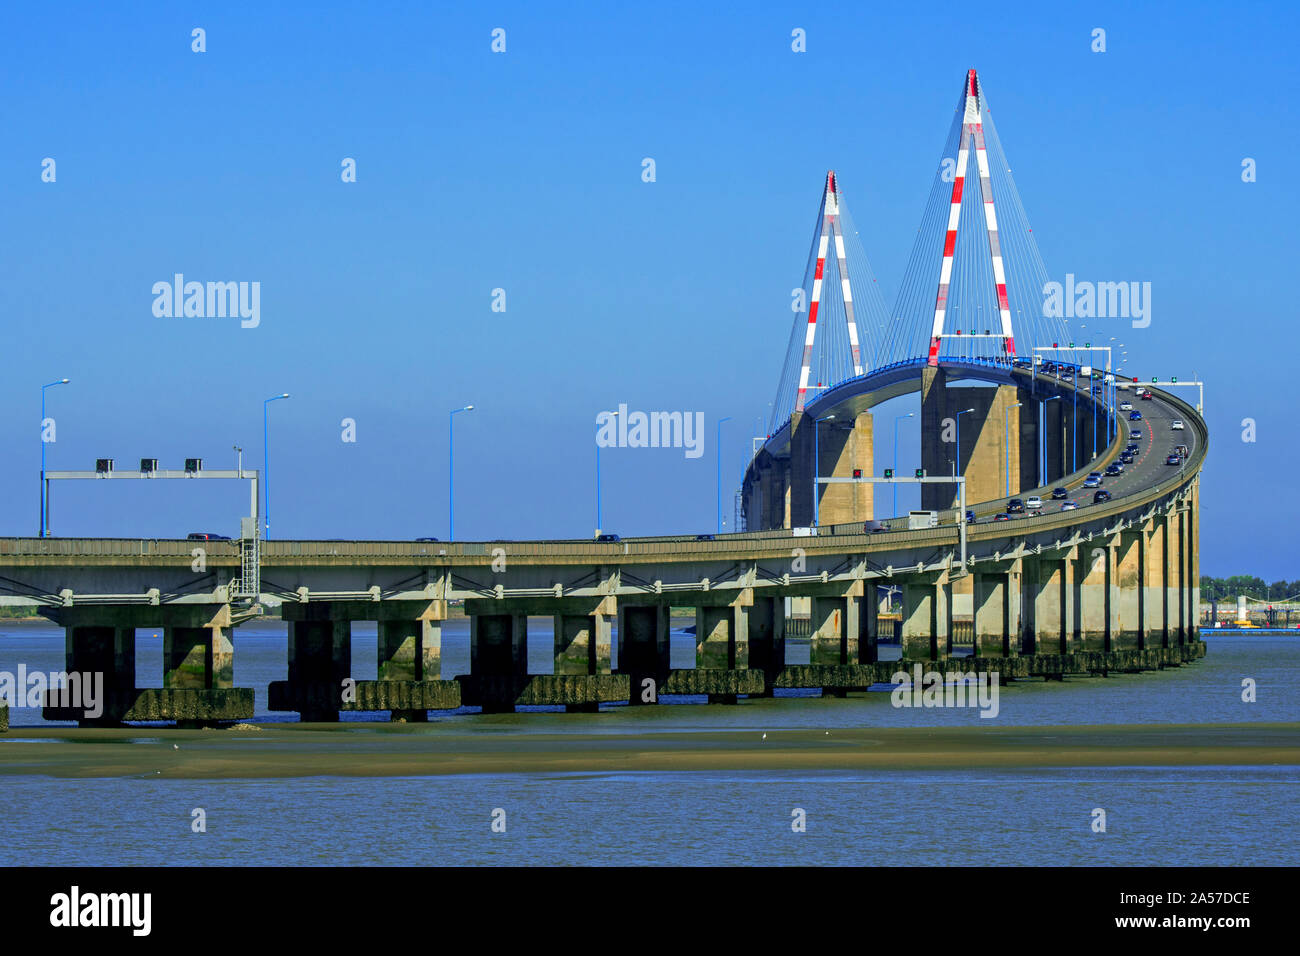 The St-Nazaire Bridge / Le pont de Saint-Nazaire, cable-stayed bridge spanning the Loire River, Loire-Atlantique, France Stock Photo